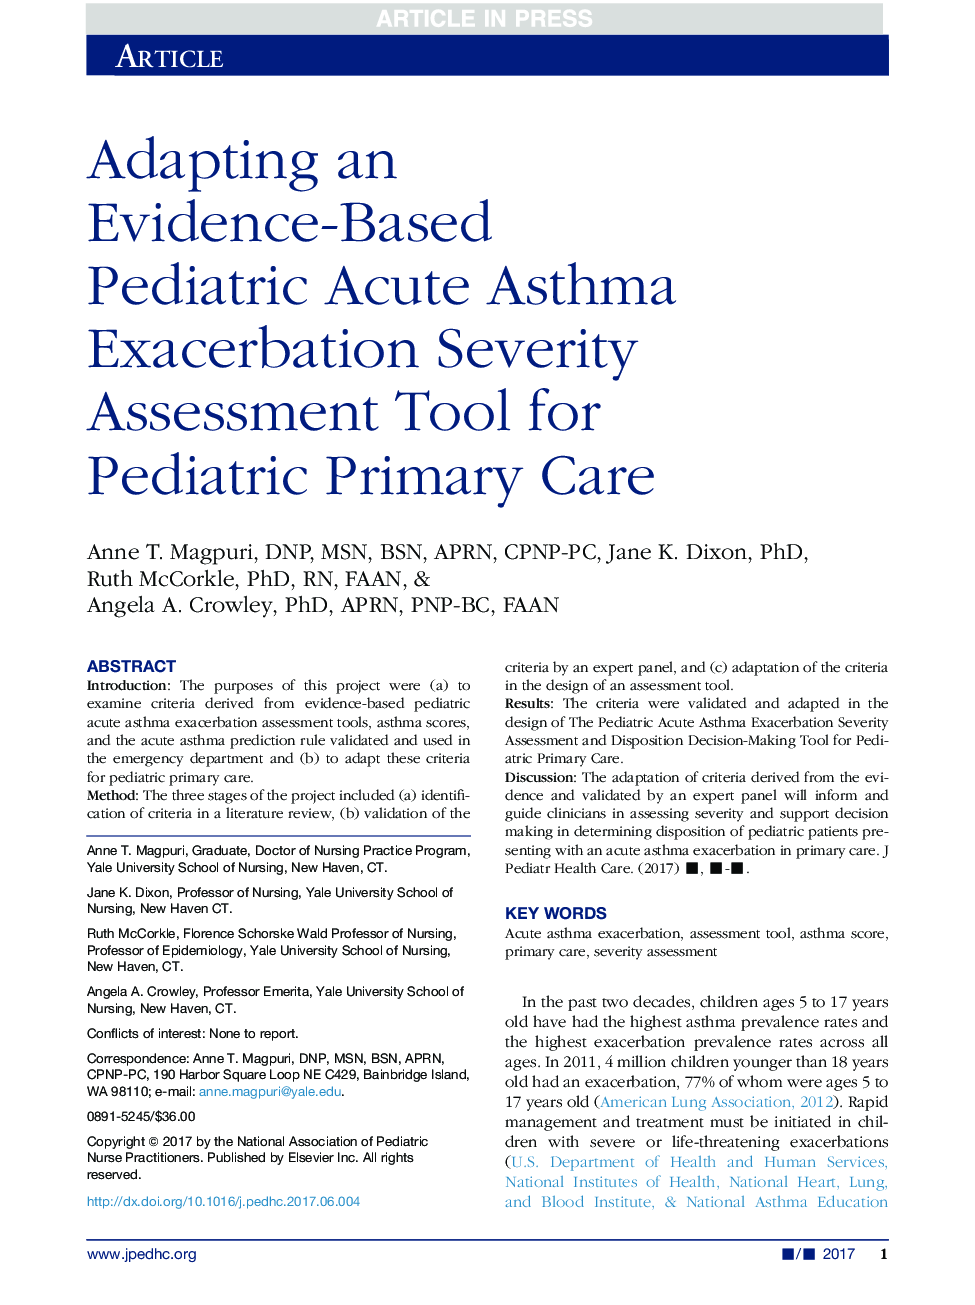 سازگاری ابزار ارزیابی شدت آسم حاد کودک مبتلا به شواهد مبتنی بر شواهد برای مراقبت اولیه کودکان 